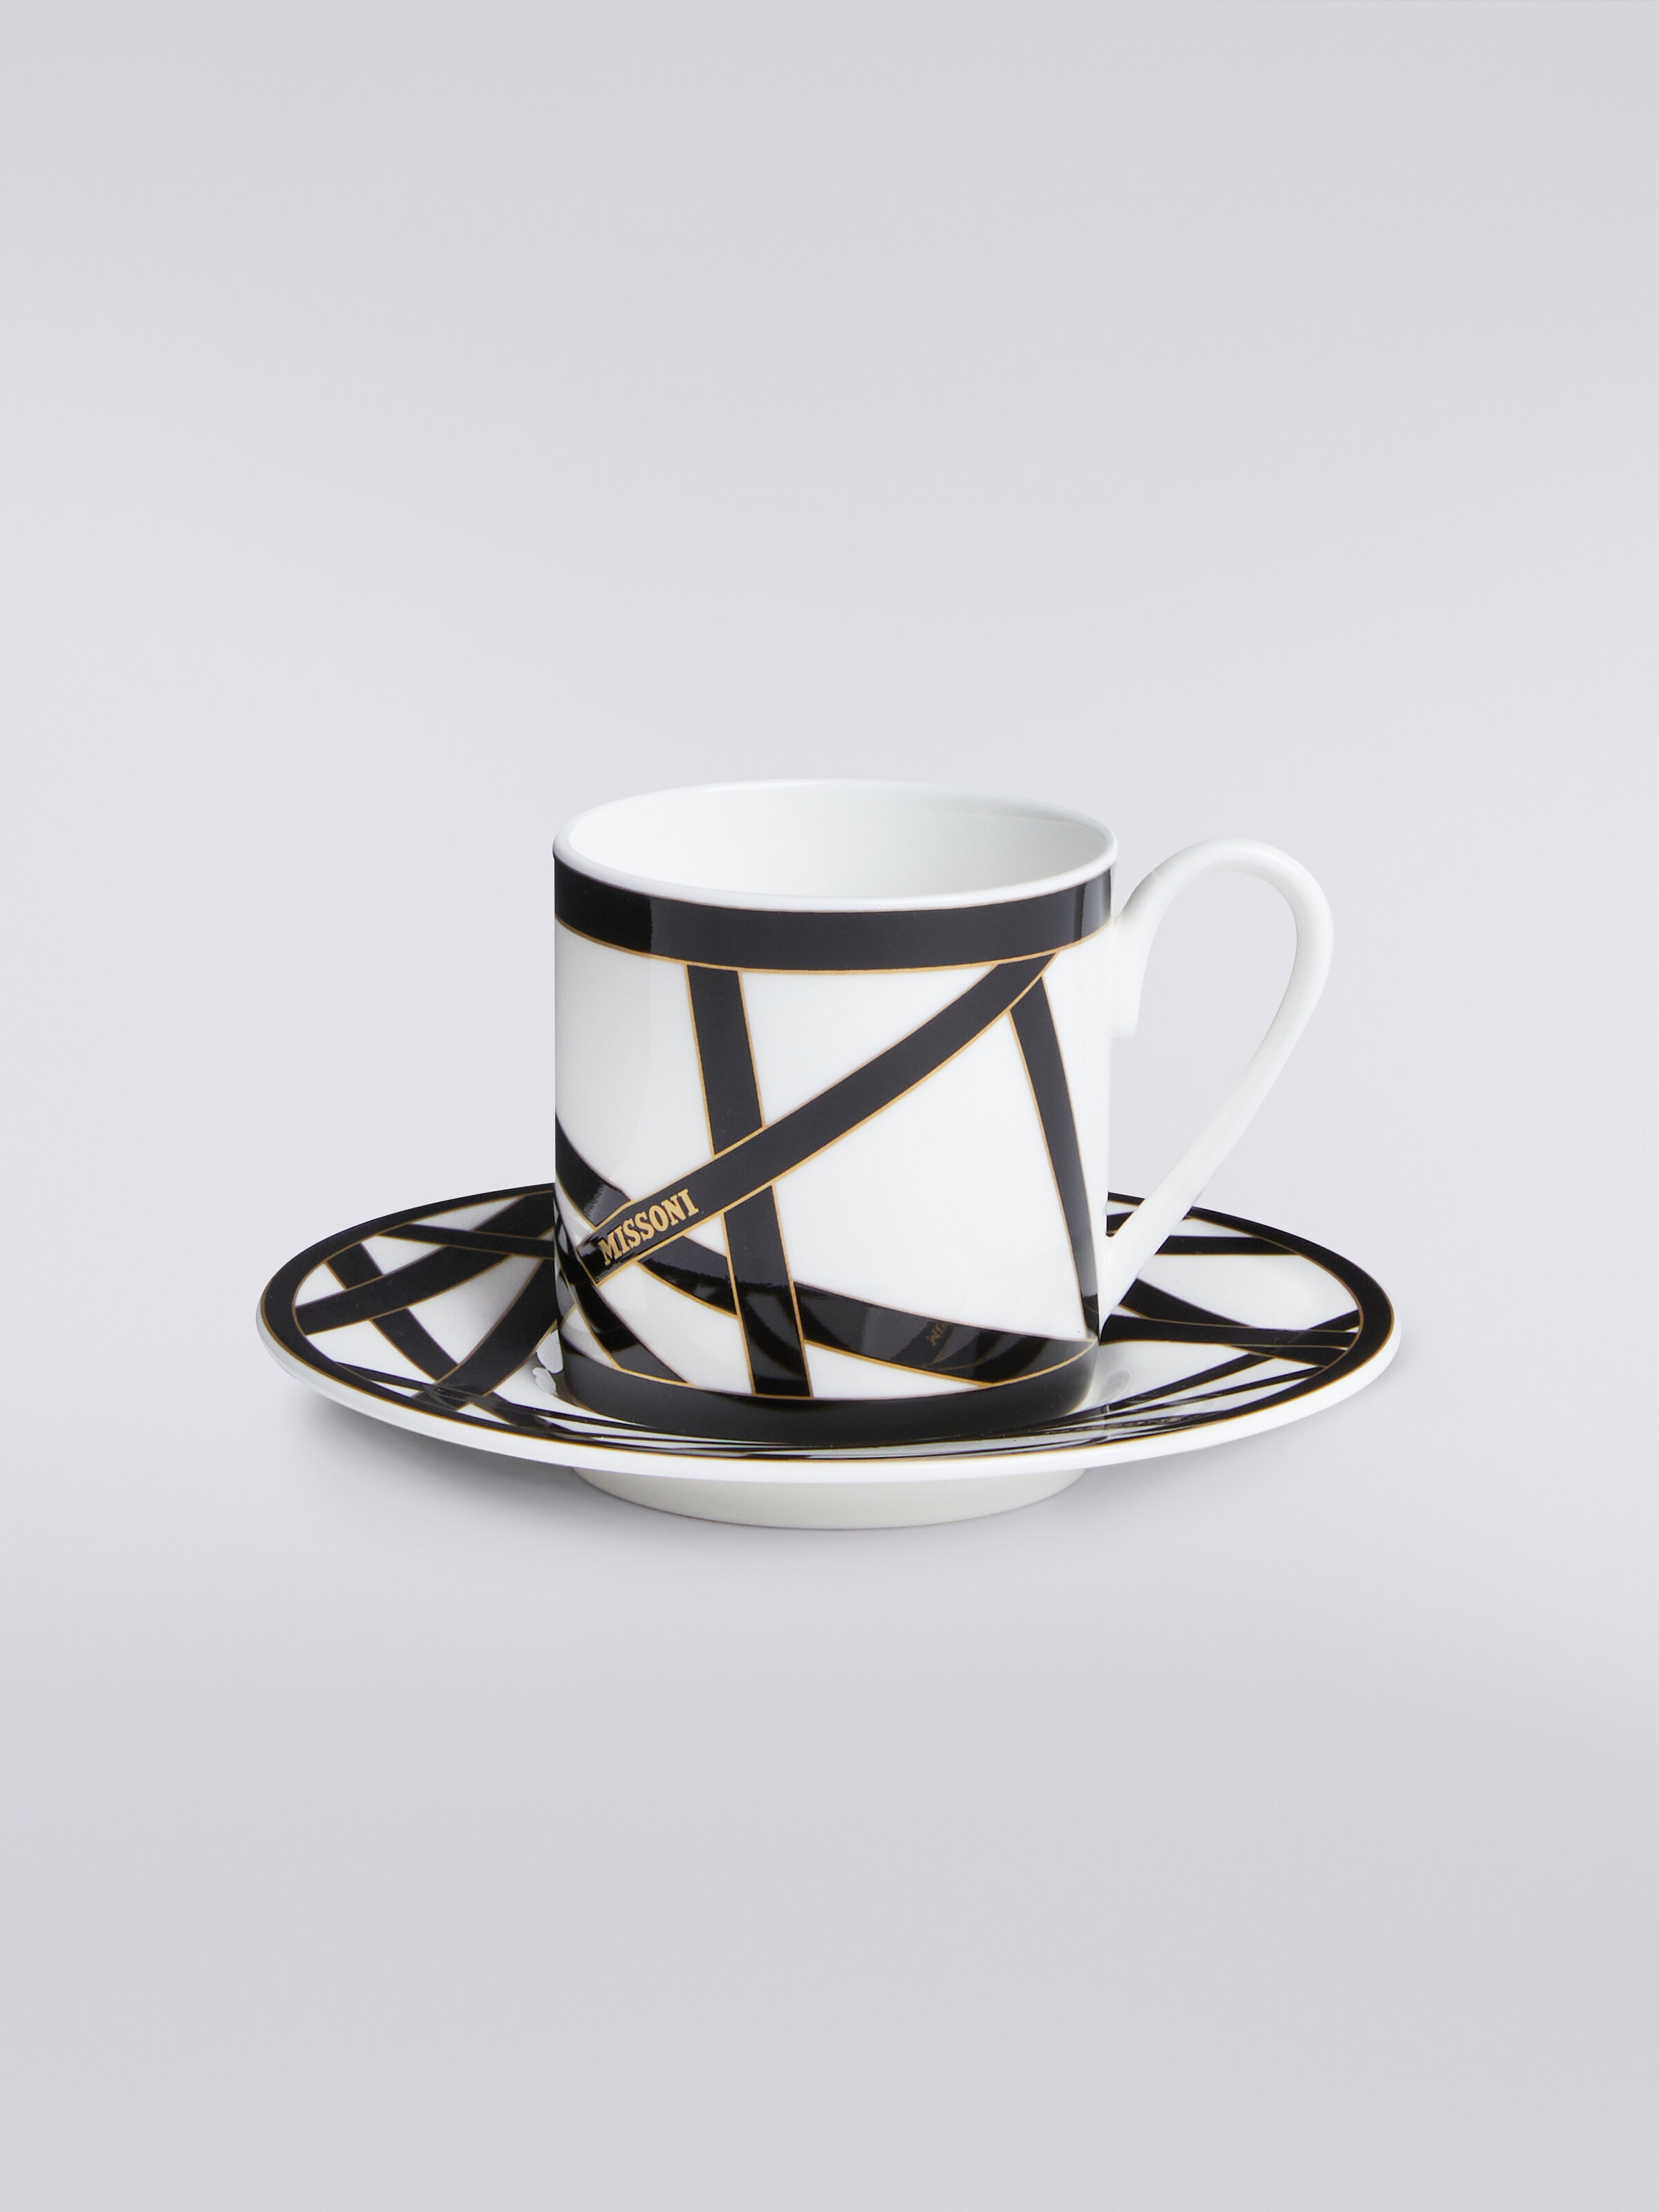 Missoni x Suonare Stella coffee cup and saucer set, Black & Multicoloured  - 0